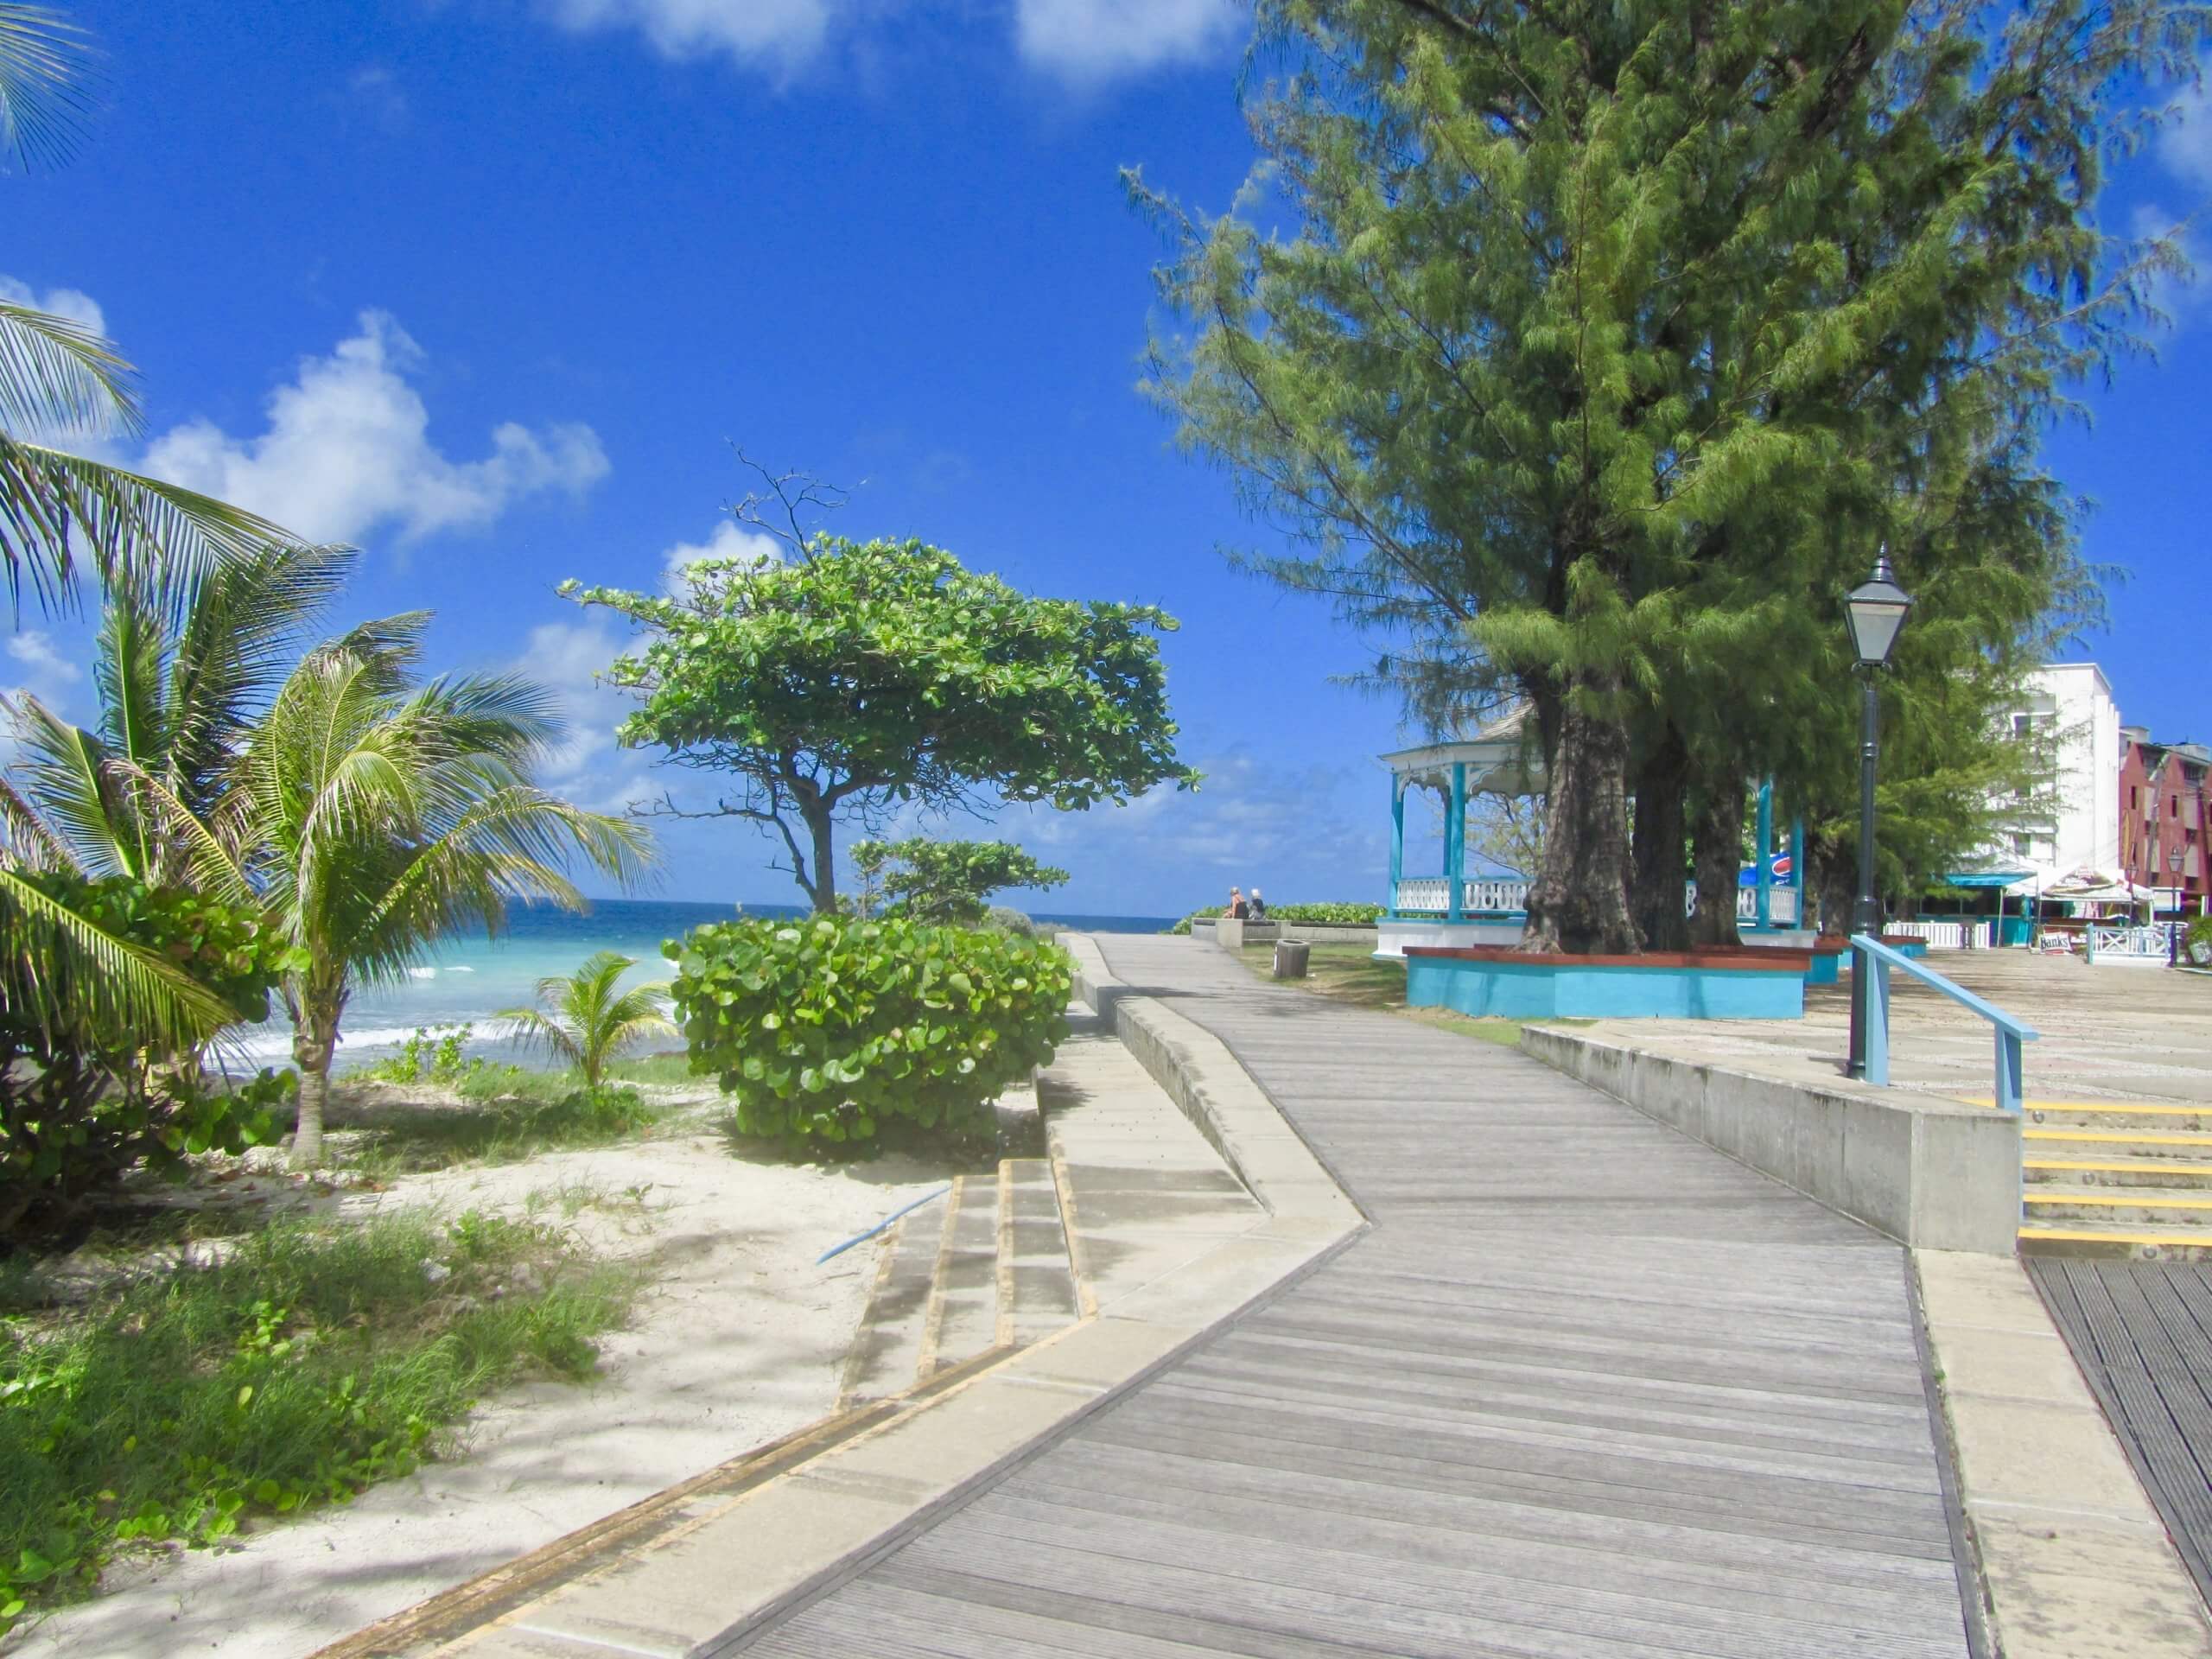 The Richard Haynes boardwalk, Hastings, Barbados